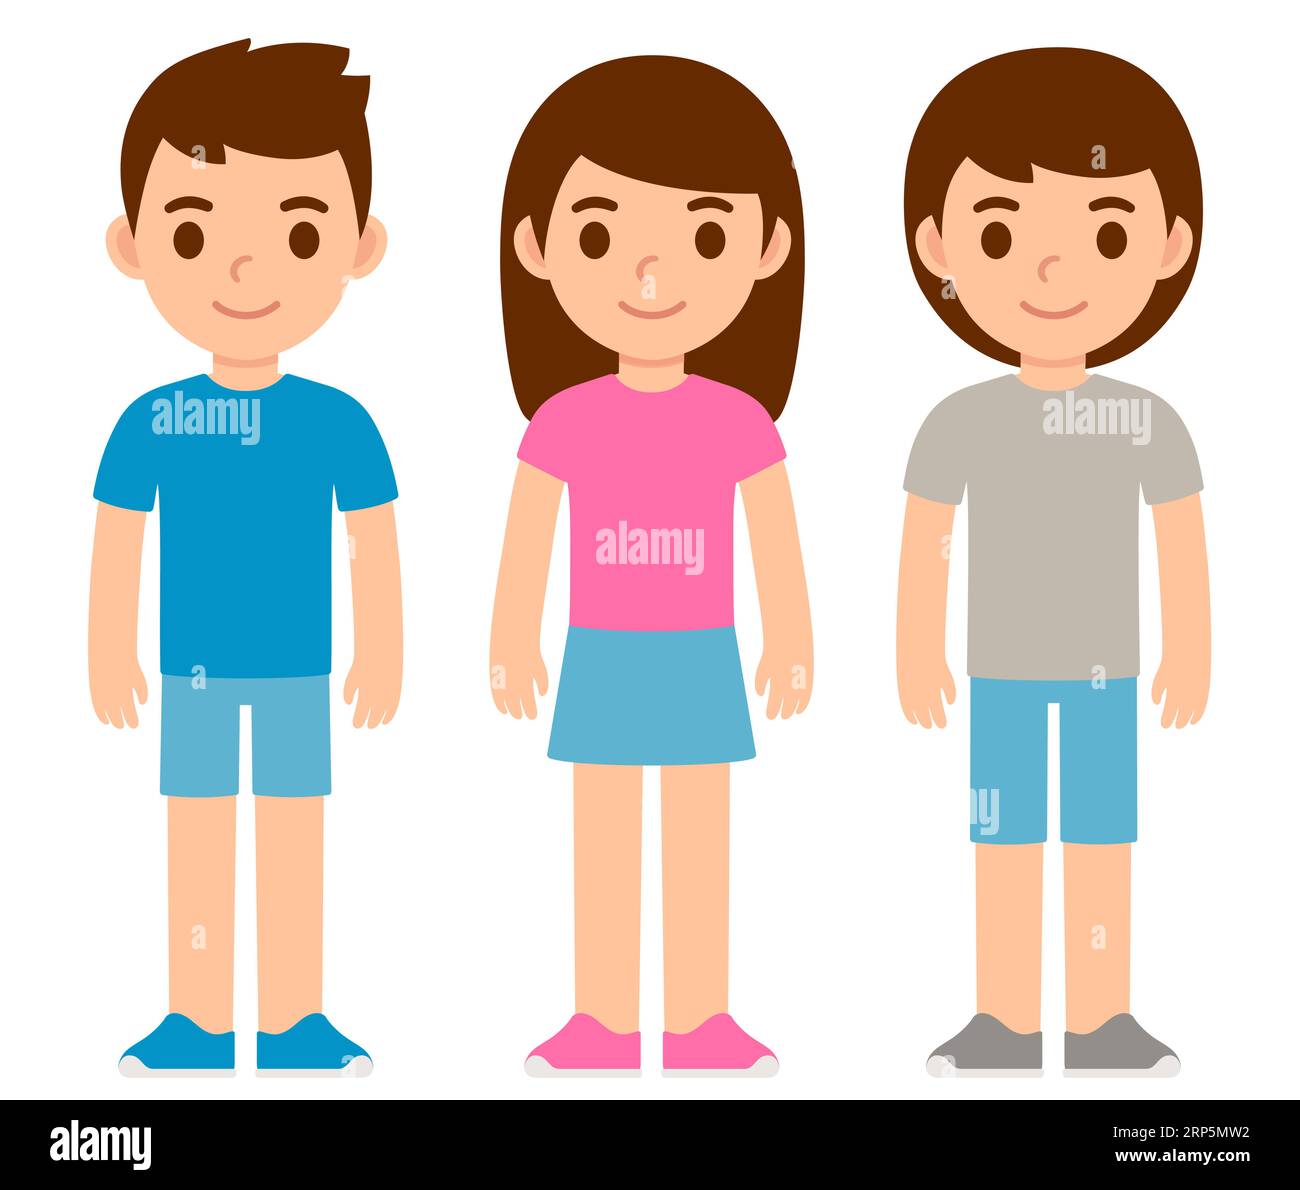 Niedlicher Karikaturjunge in blauem Hemd, Mädchen in rosafarbenem Hemd und Kind in Unisex-Kleidung. Geschlechtsspezifische Expression von Kindern. Einfache flache Vektorillustration. Stock Vektor